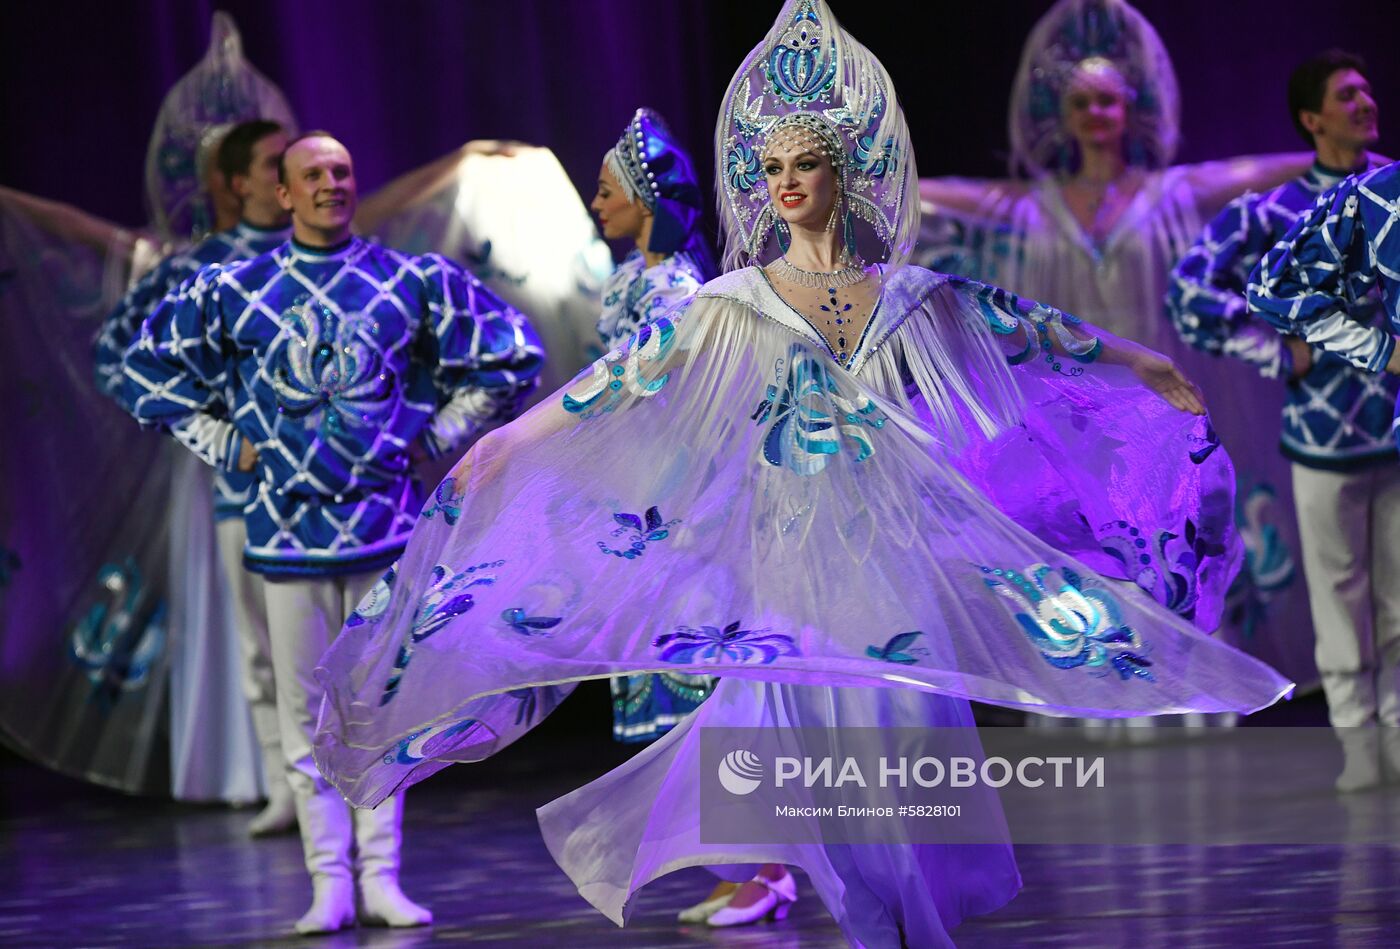 Фестиваль народного искусства "Танцуй и пой, моя Россия!"